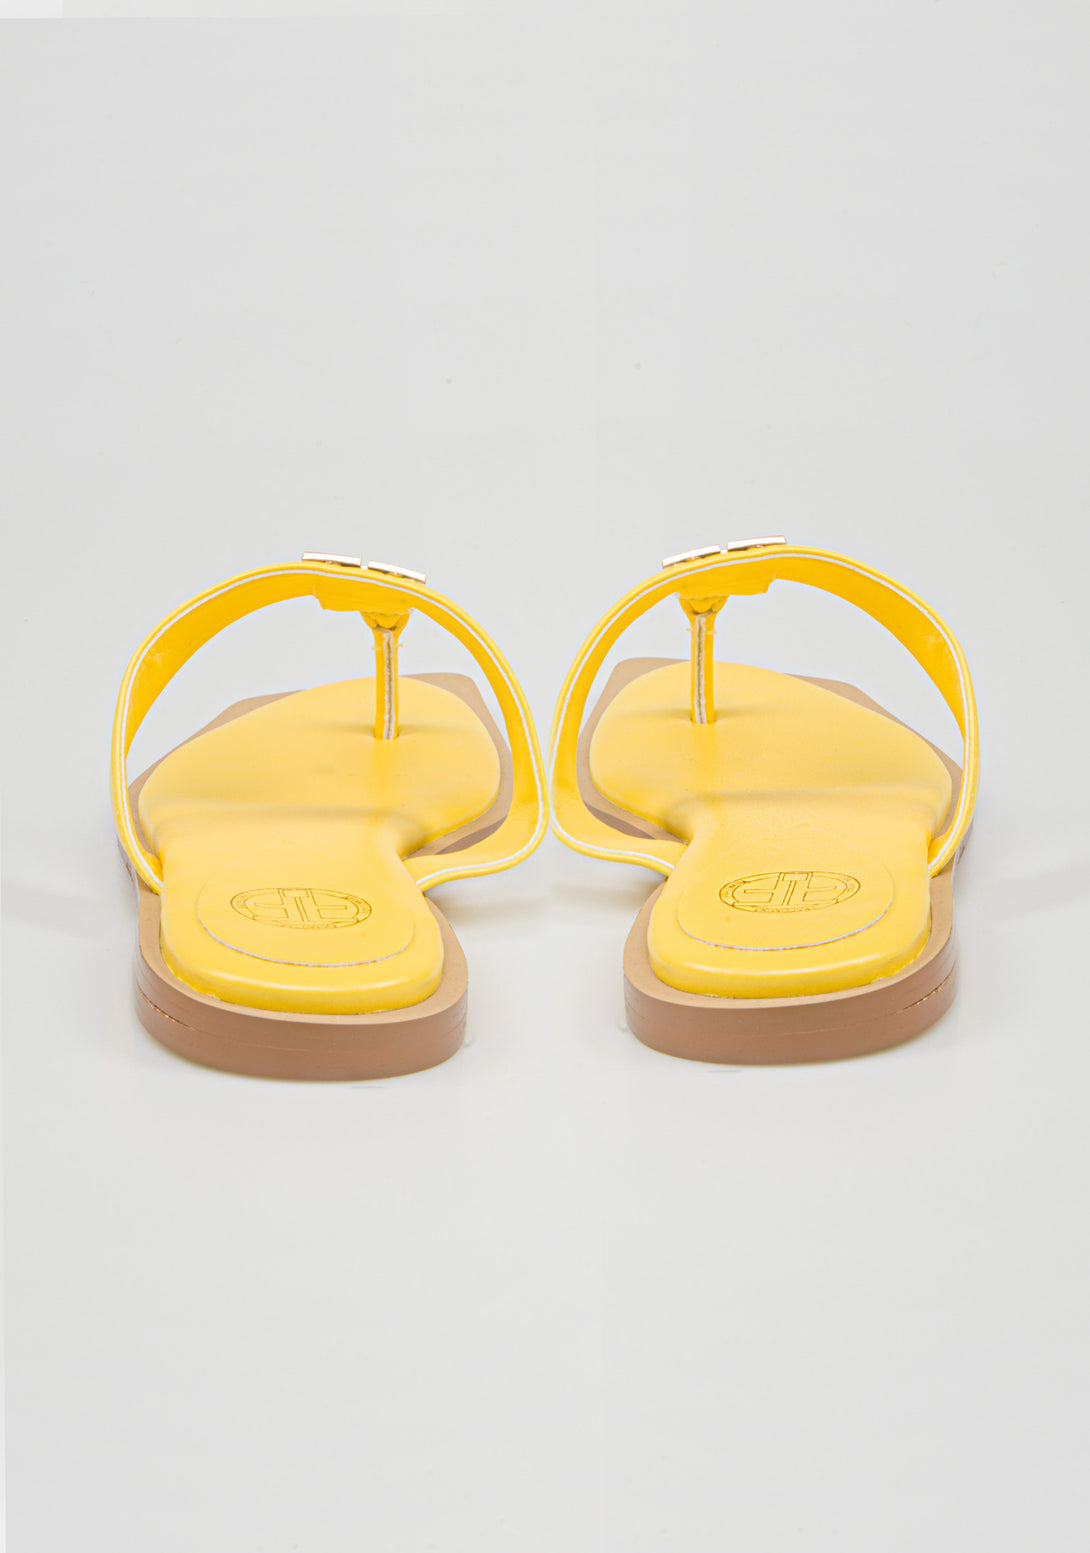 Low flip-flop sandals